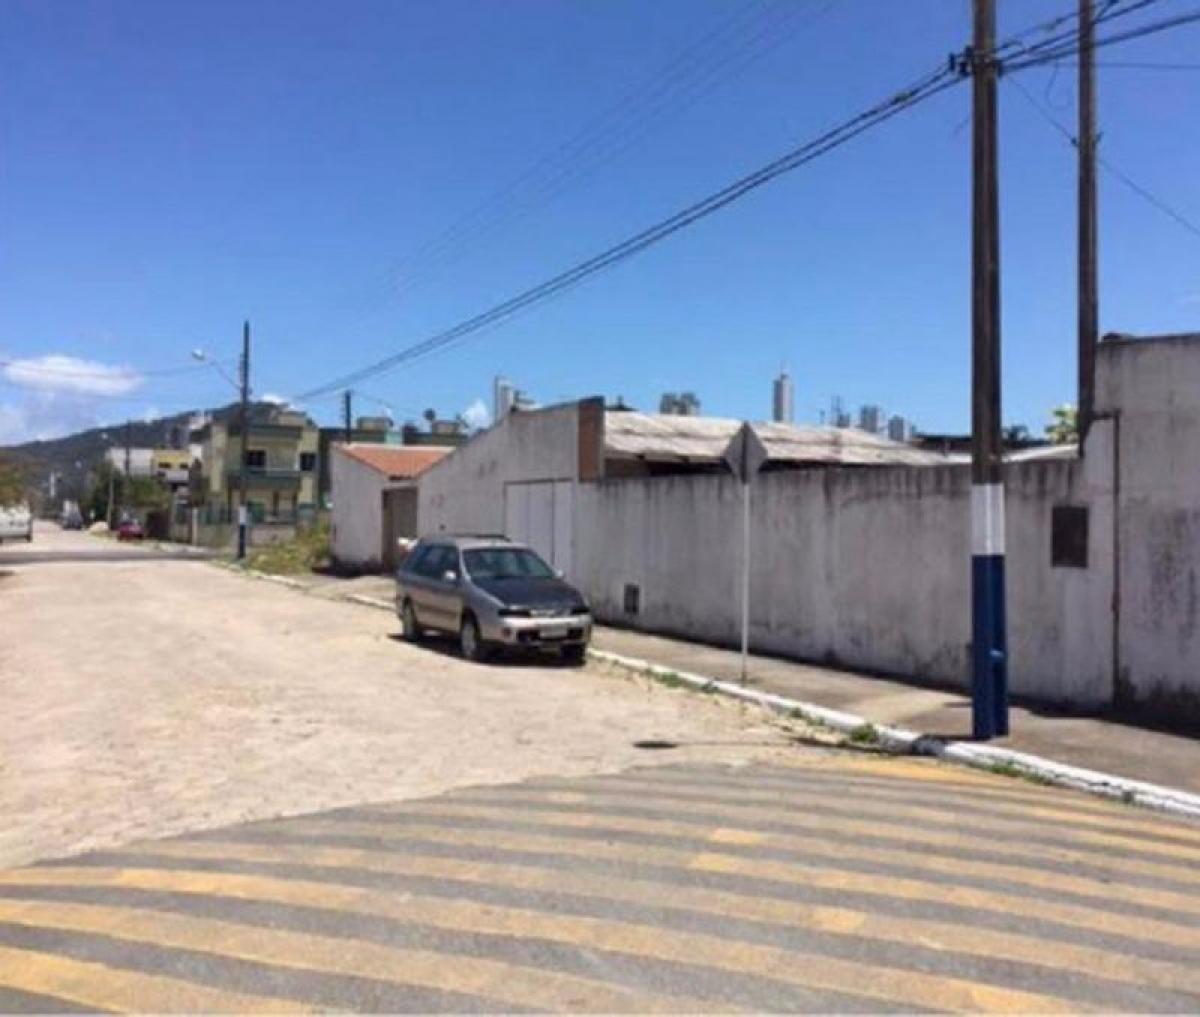 Picture of Residential Land For Sale in Balneario Camboriu, Santa Catarina, Brazil